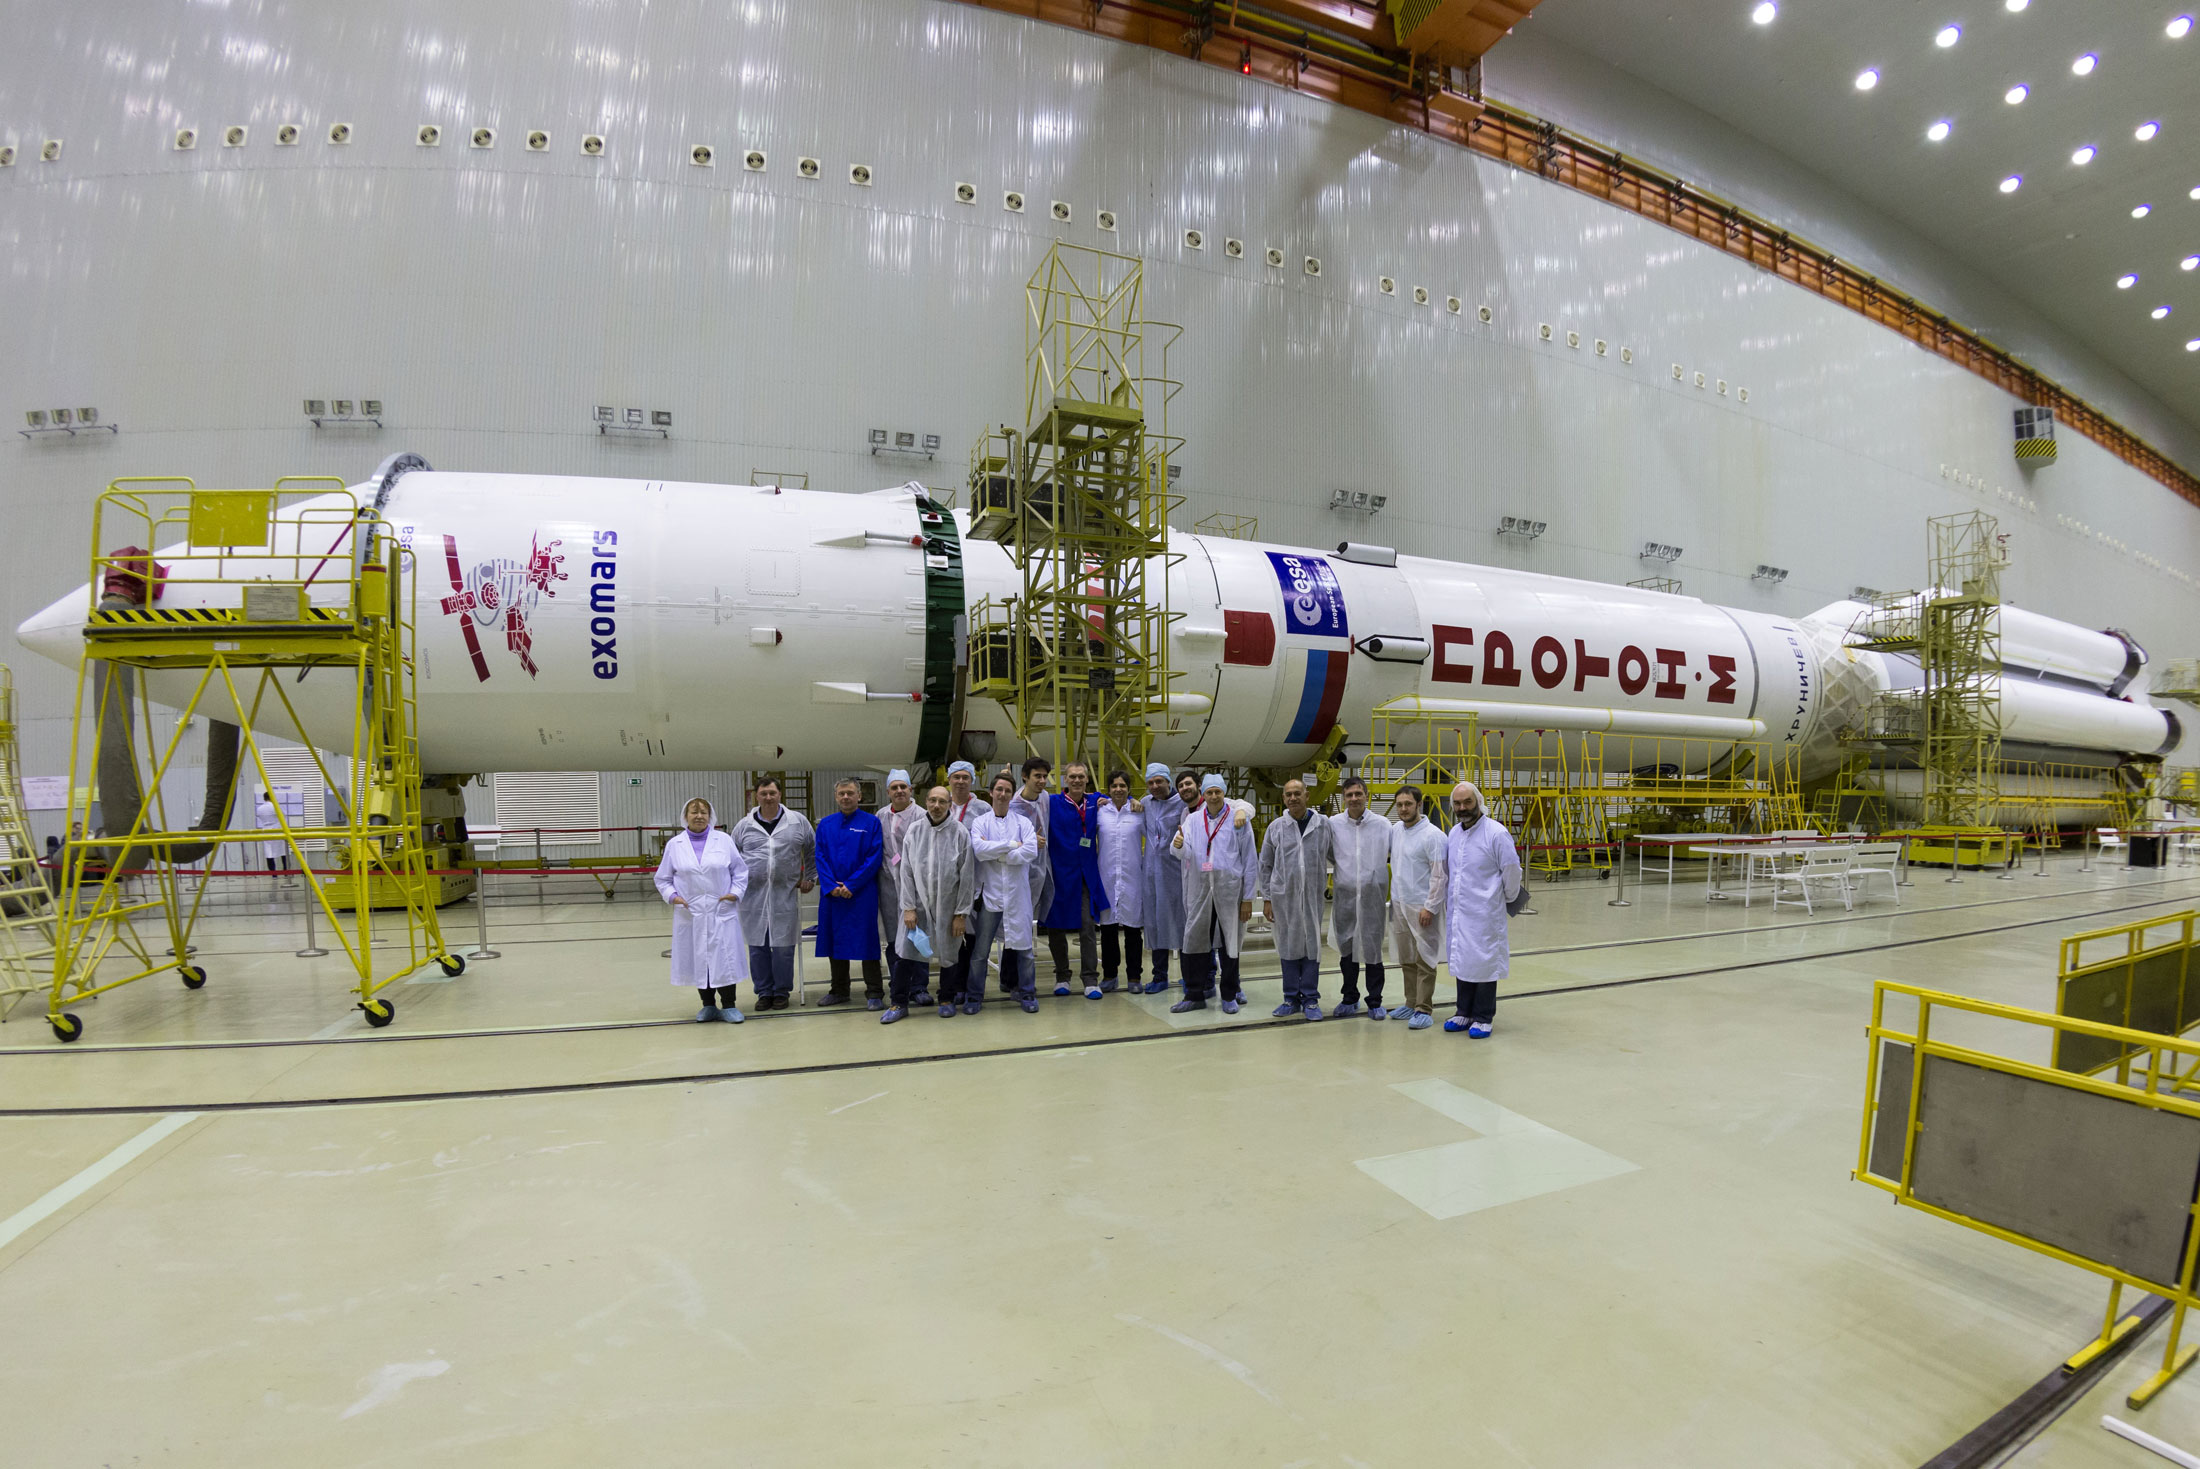 Le lanceur Proton avec à son bord la sonde ExoMars 2016. © Esa/KhSC